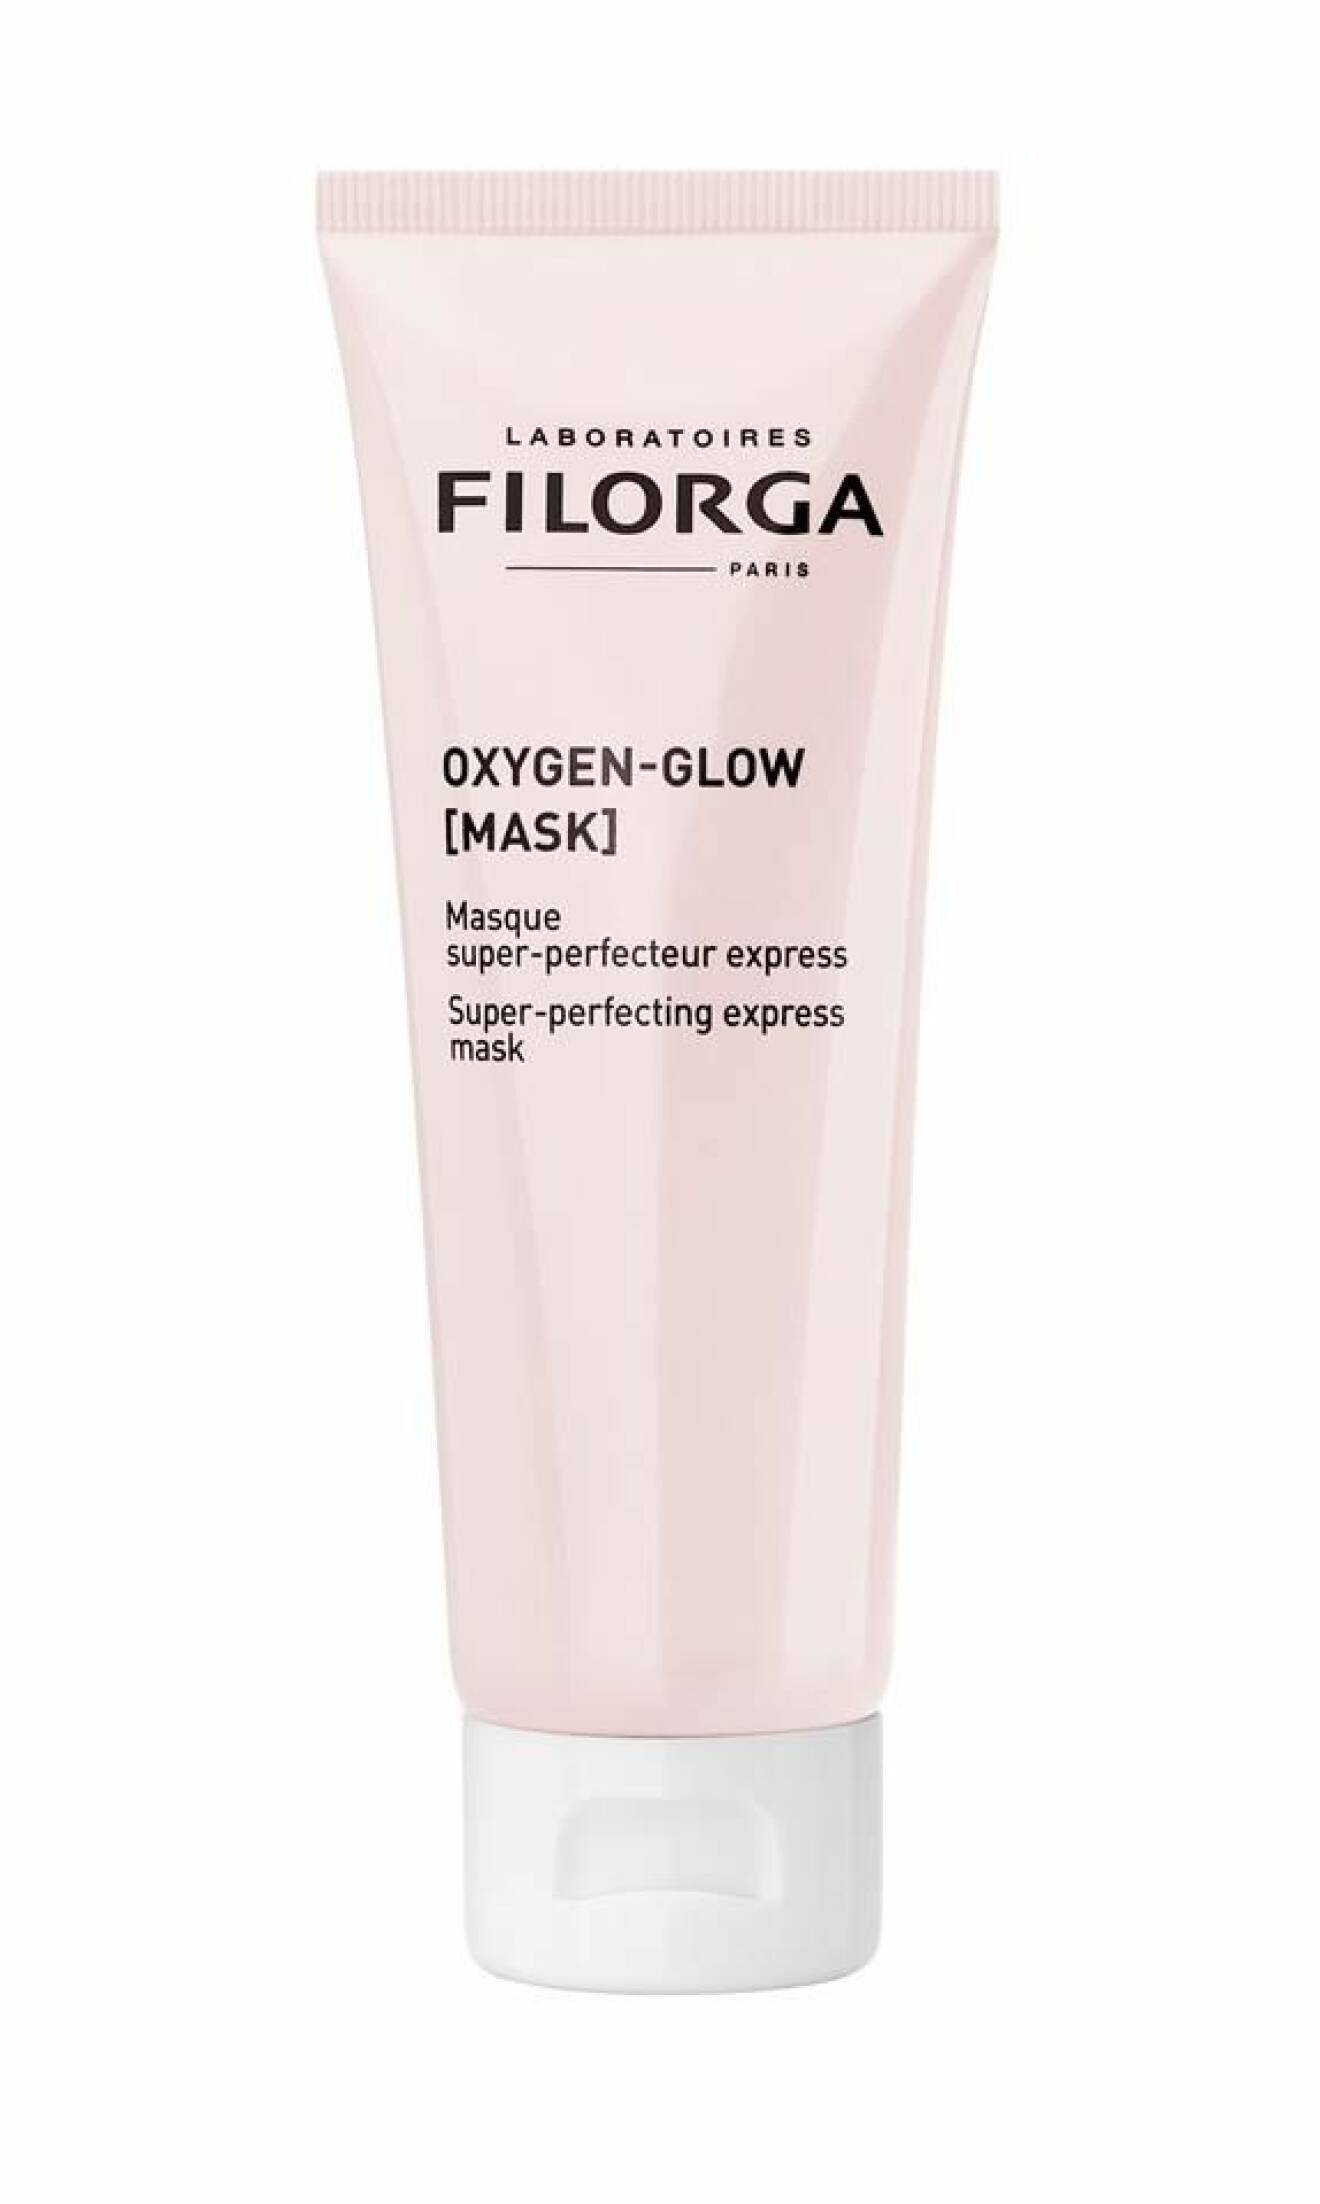 Ansiktsmask från serien Oxygen-Glow från Filorga.